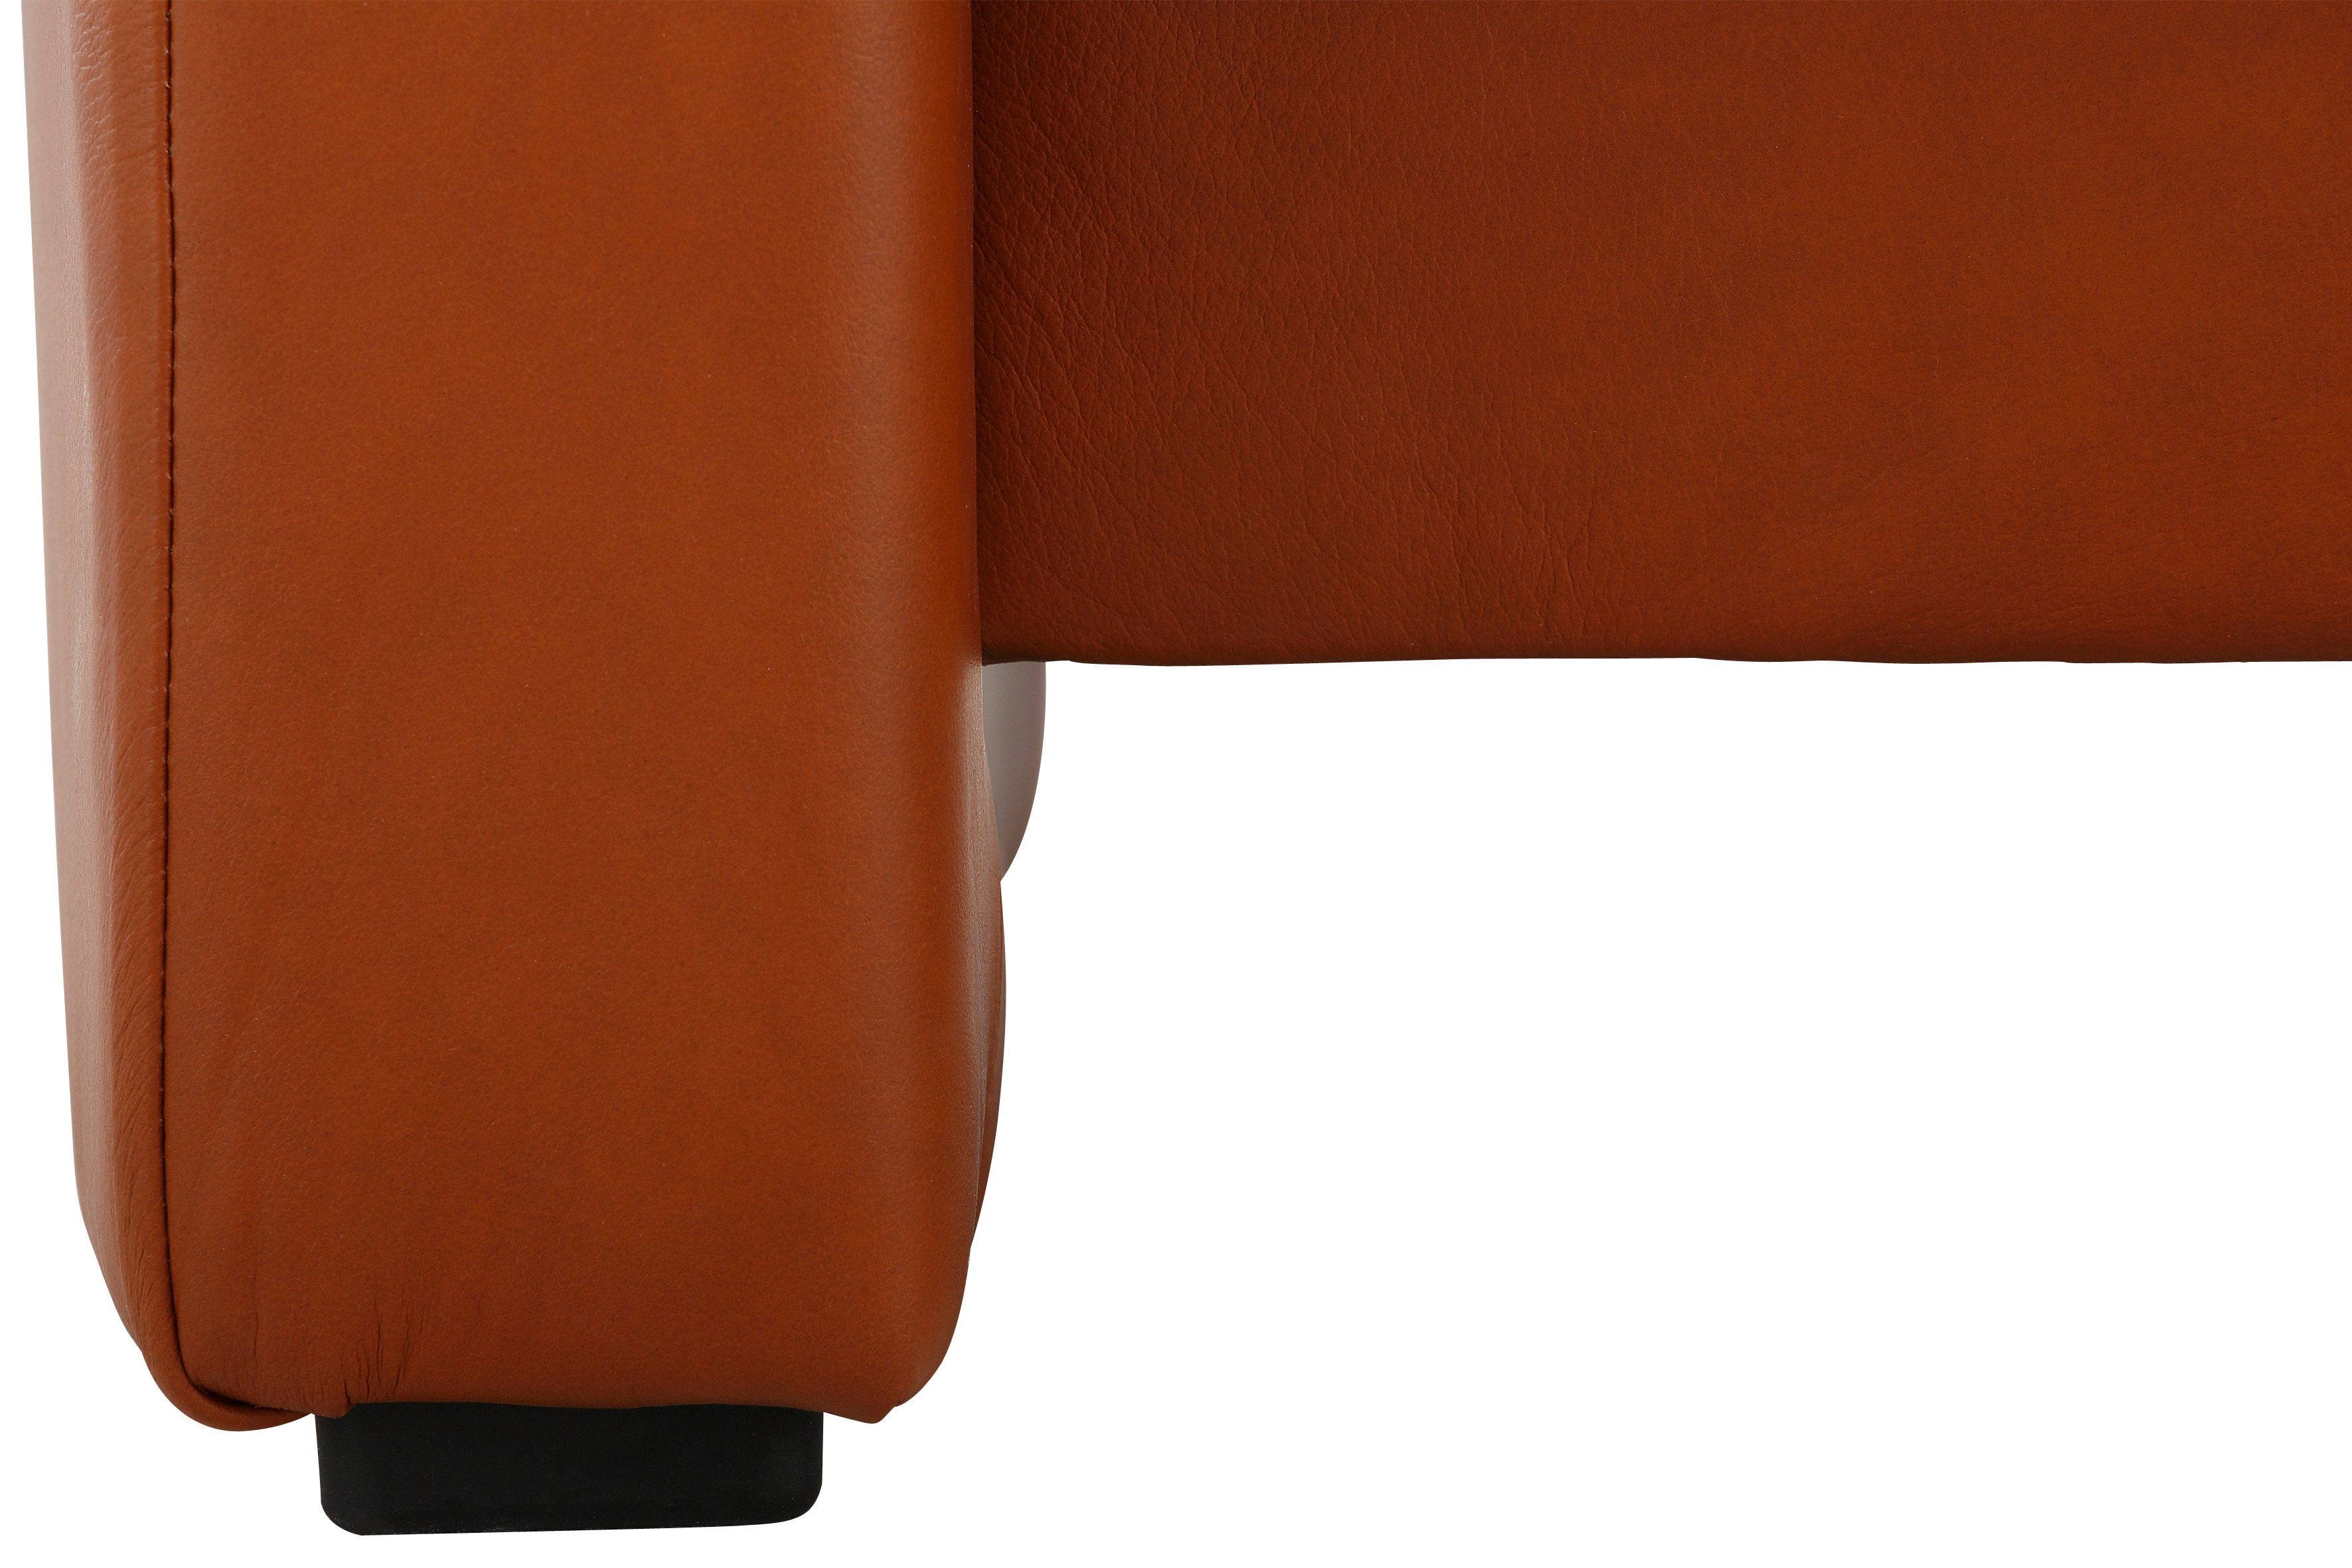 2-Sitzer PALOMA & Stressless® Relaxfunktion High copper 154 Rückenverstellung, cm Sapphire, Back, mit Breite